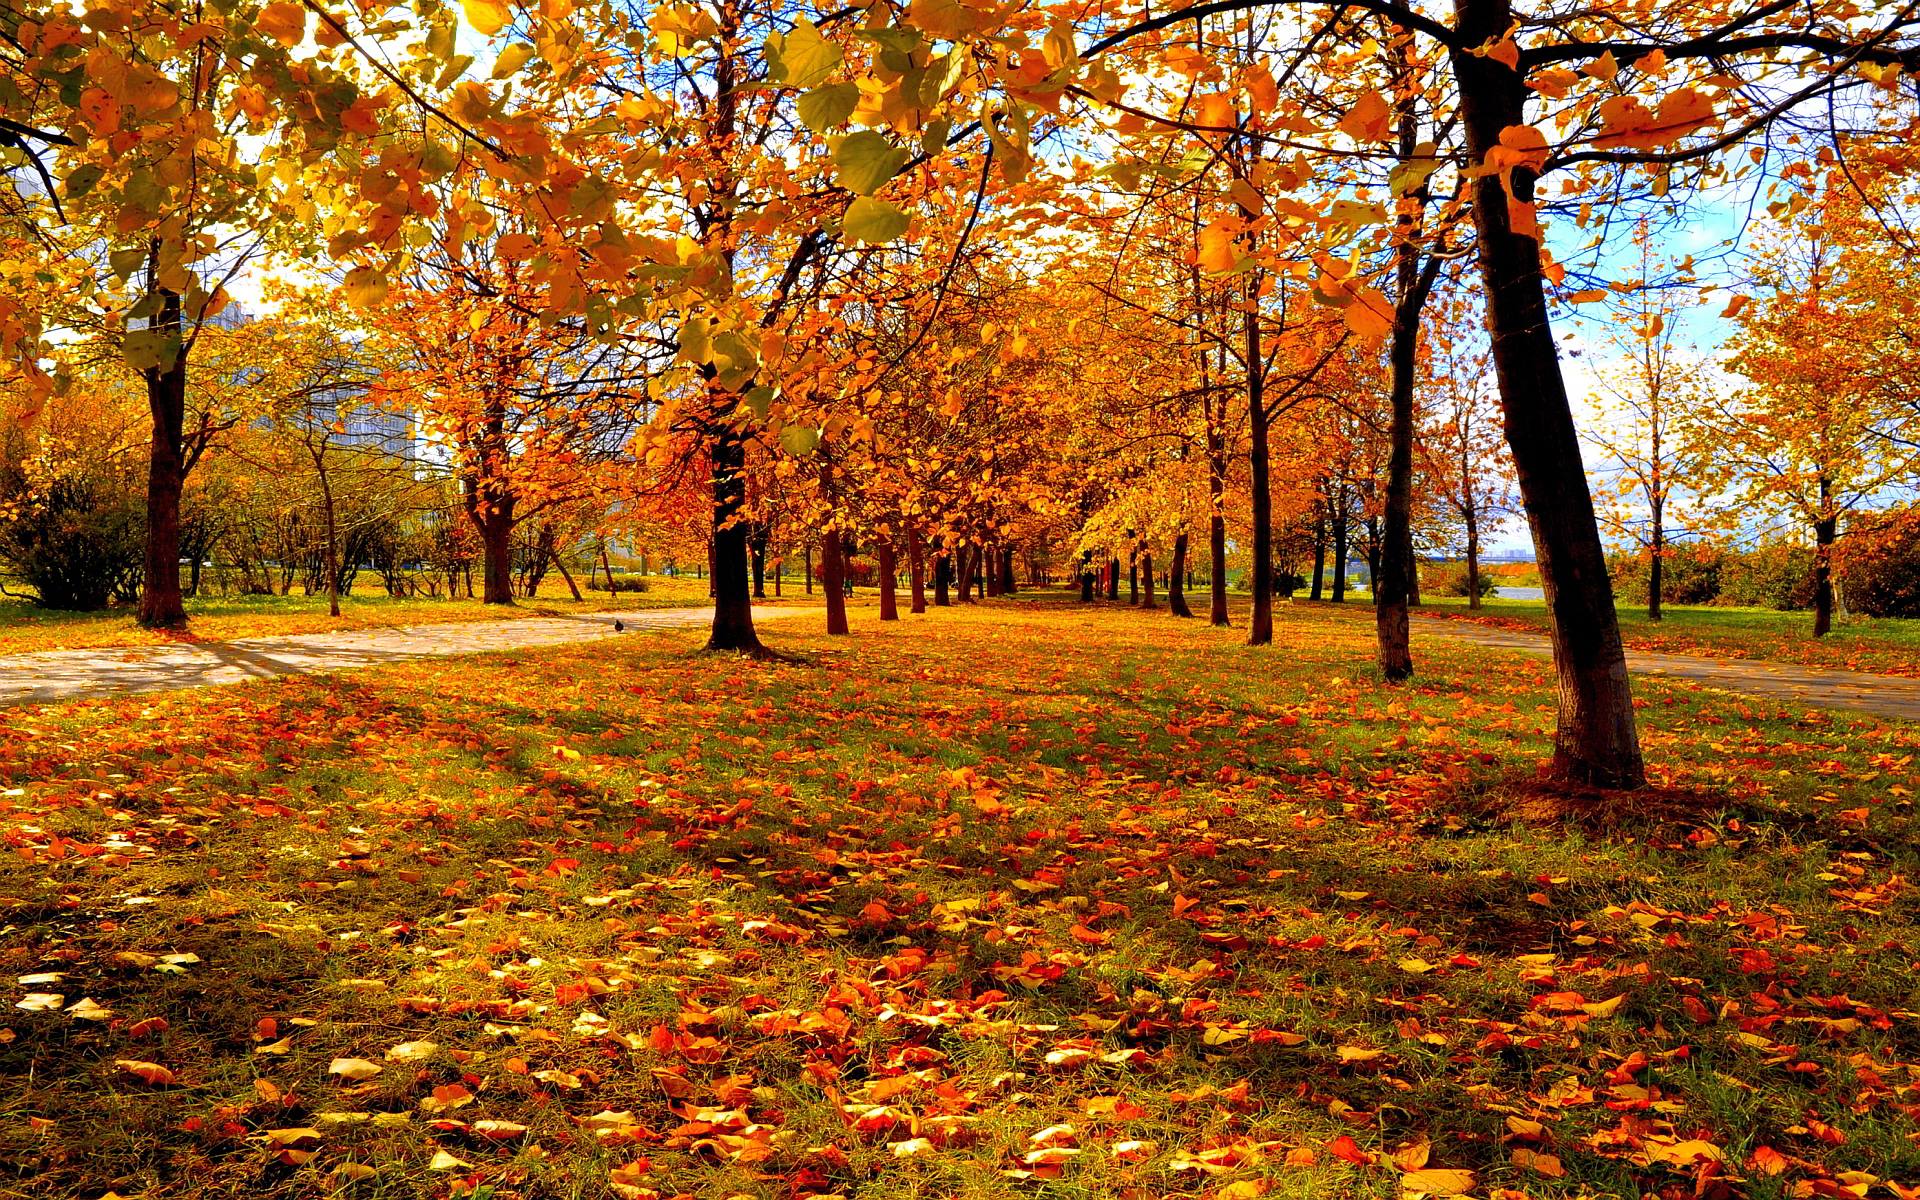 Autumn park leaves